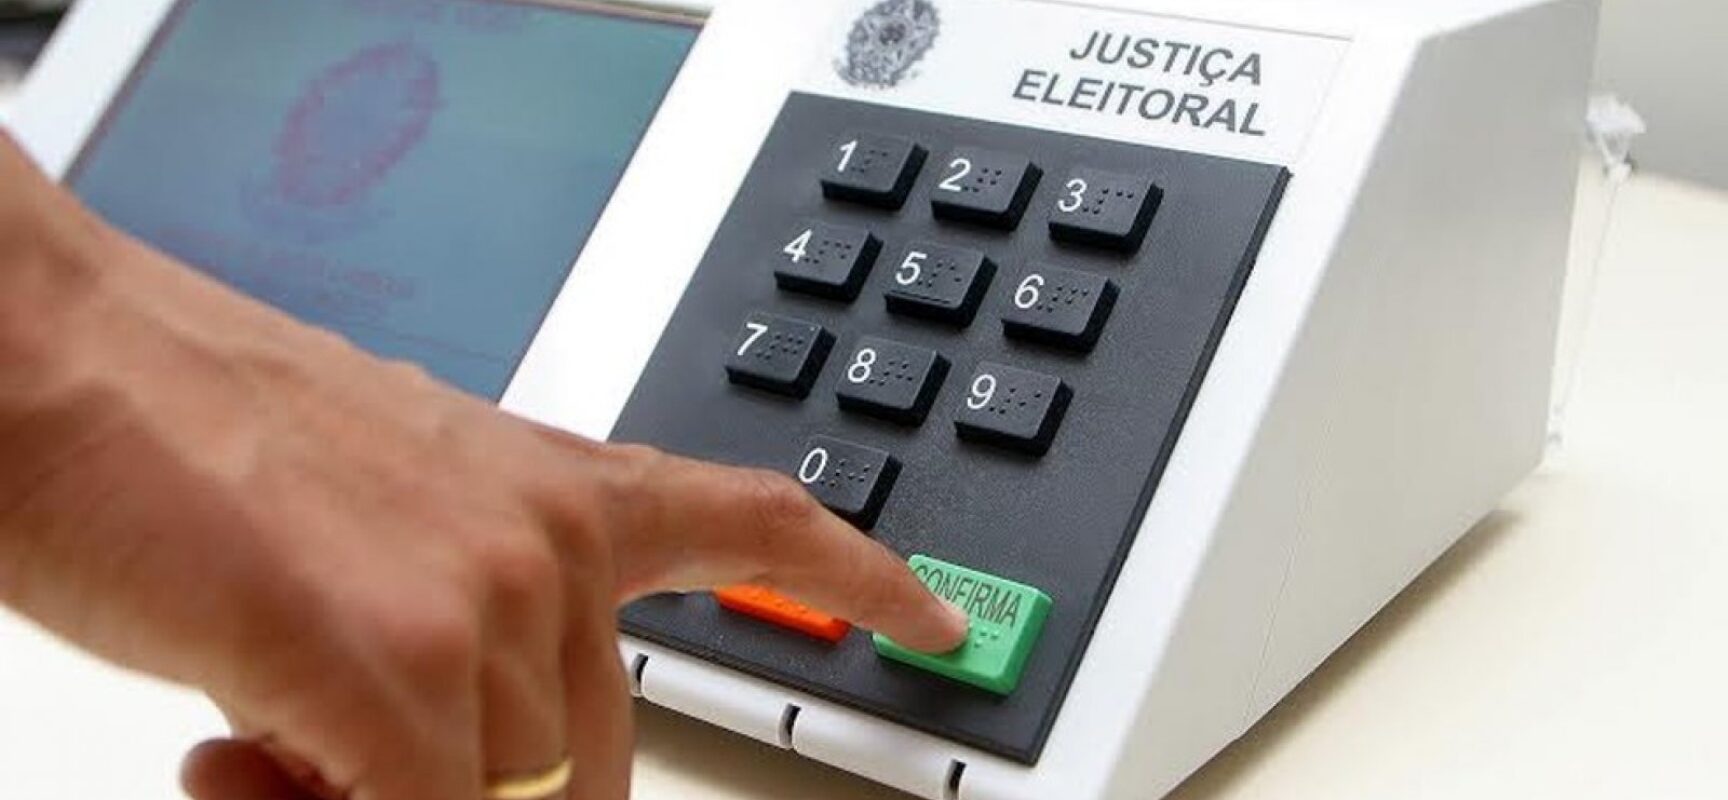 Ministro da Defesa propõe “votação paralela” com cédula de papel para teste no dia da eleição